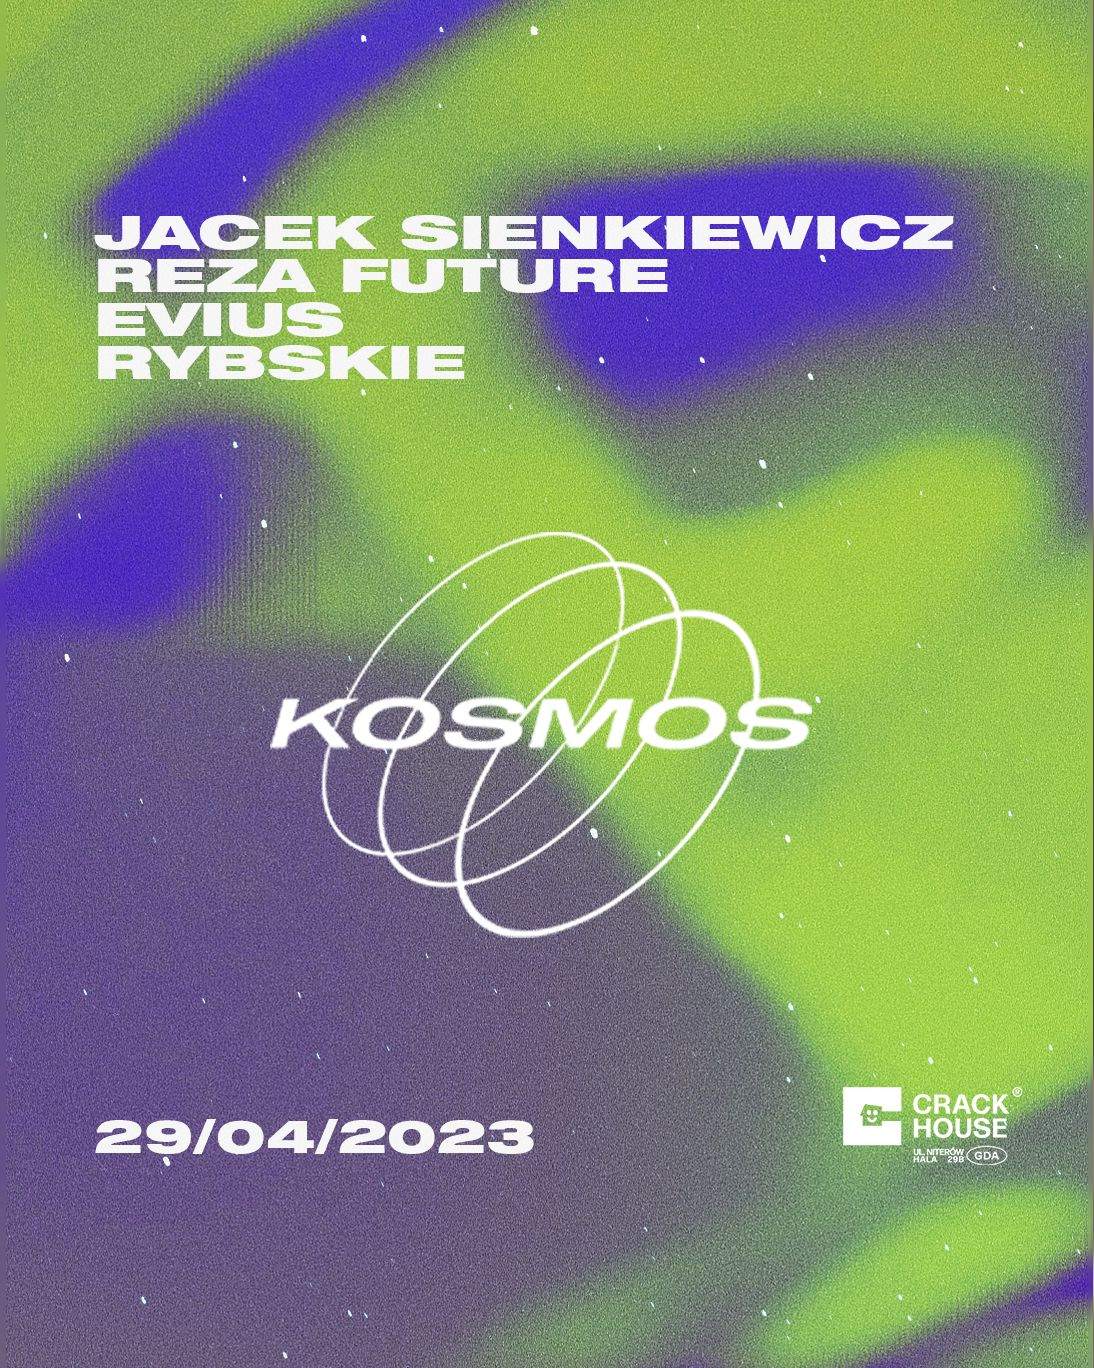 KOSMOS with Jacek Sienkiewicz - フライヤー表